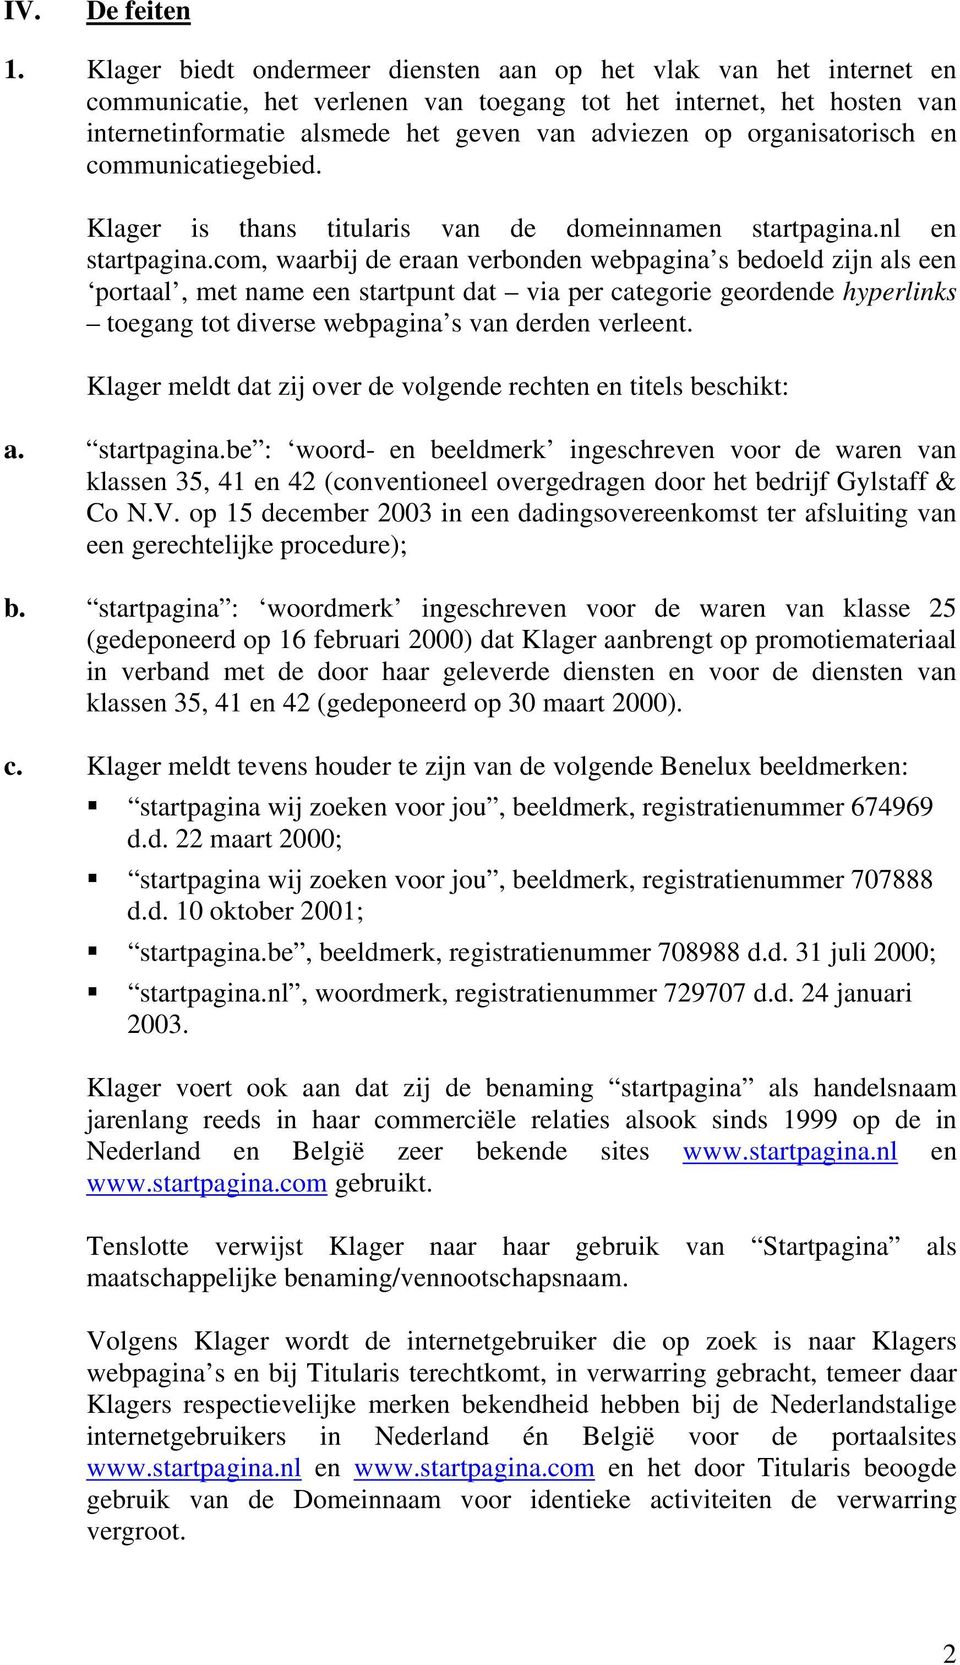 organisatorisch en communicatiegebied. Klager is thans titularis van de domeinnamen startpagina.nl en startpagina.